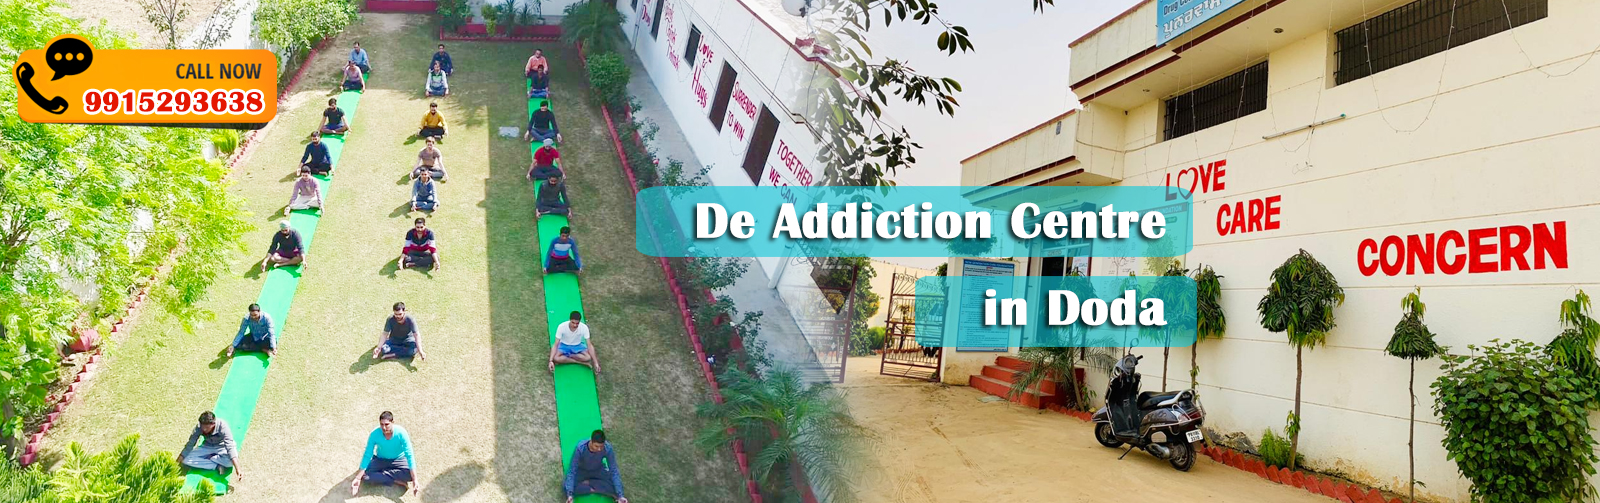 De Addiction Centre in Doda